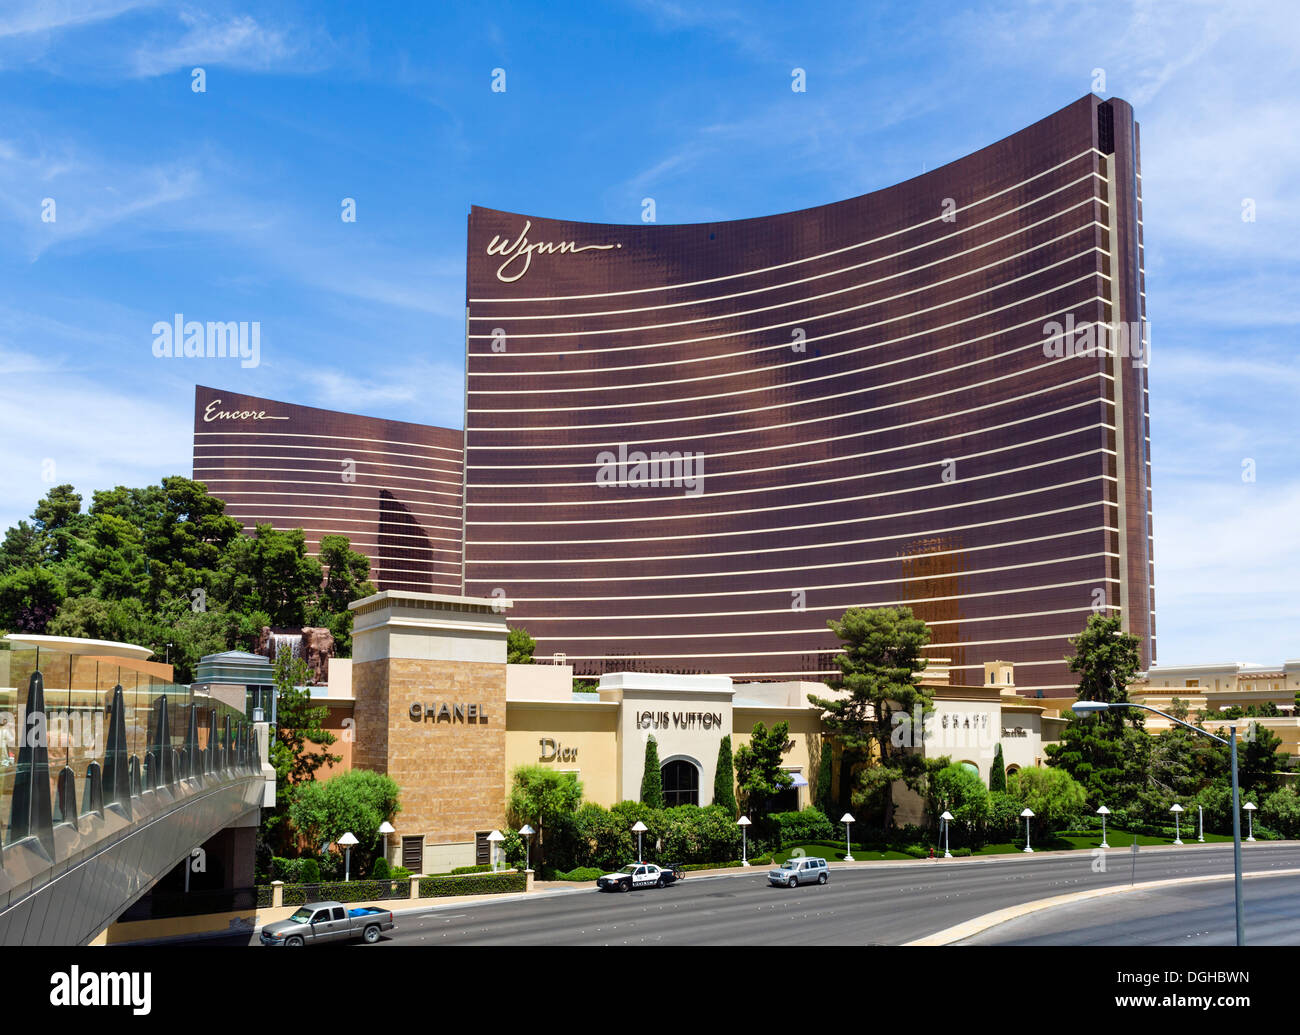 Le rappel et Wynn hôtels et casinos de Spring Mountain Road, Las Vegas, Nevada, USA Banque D'Images